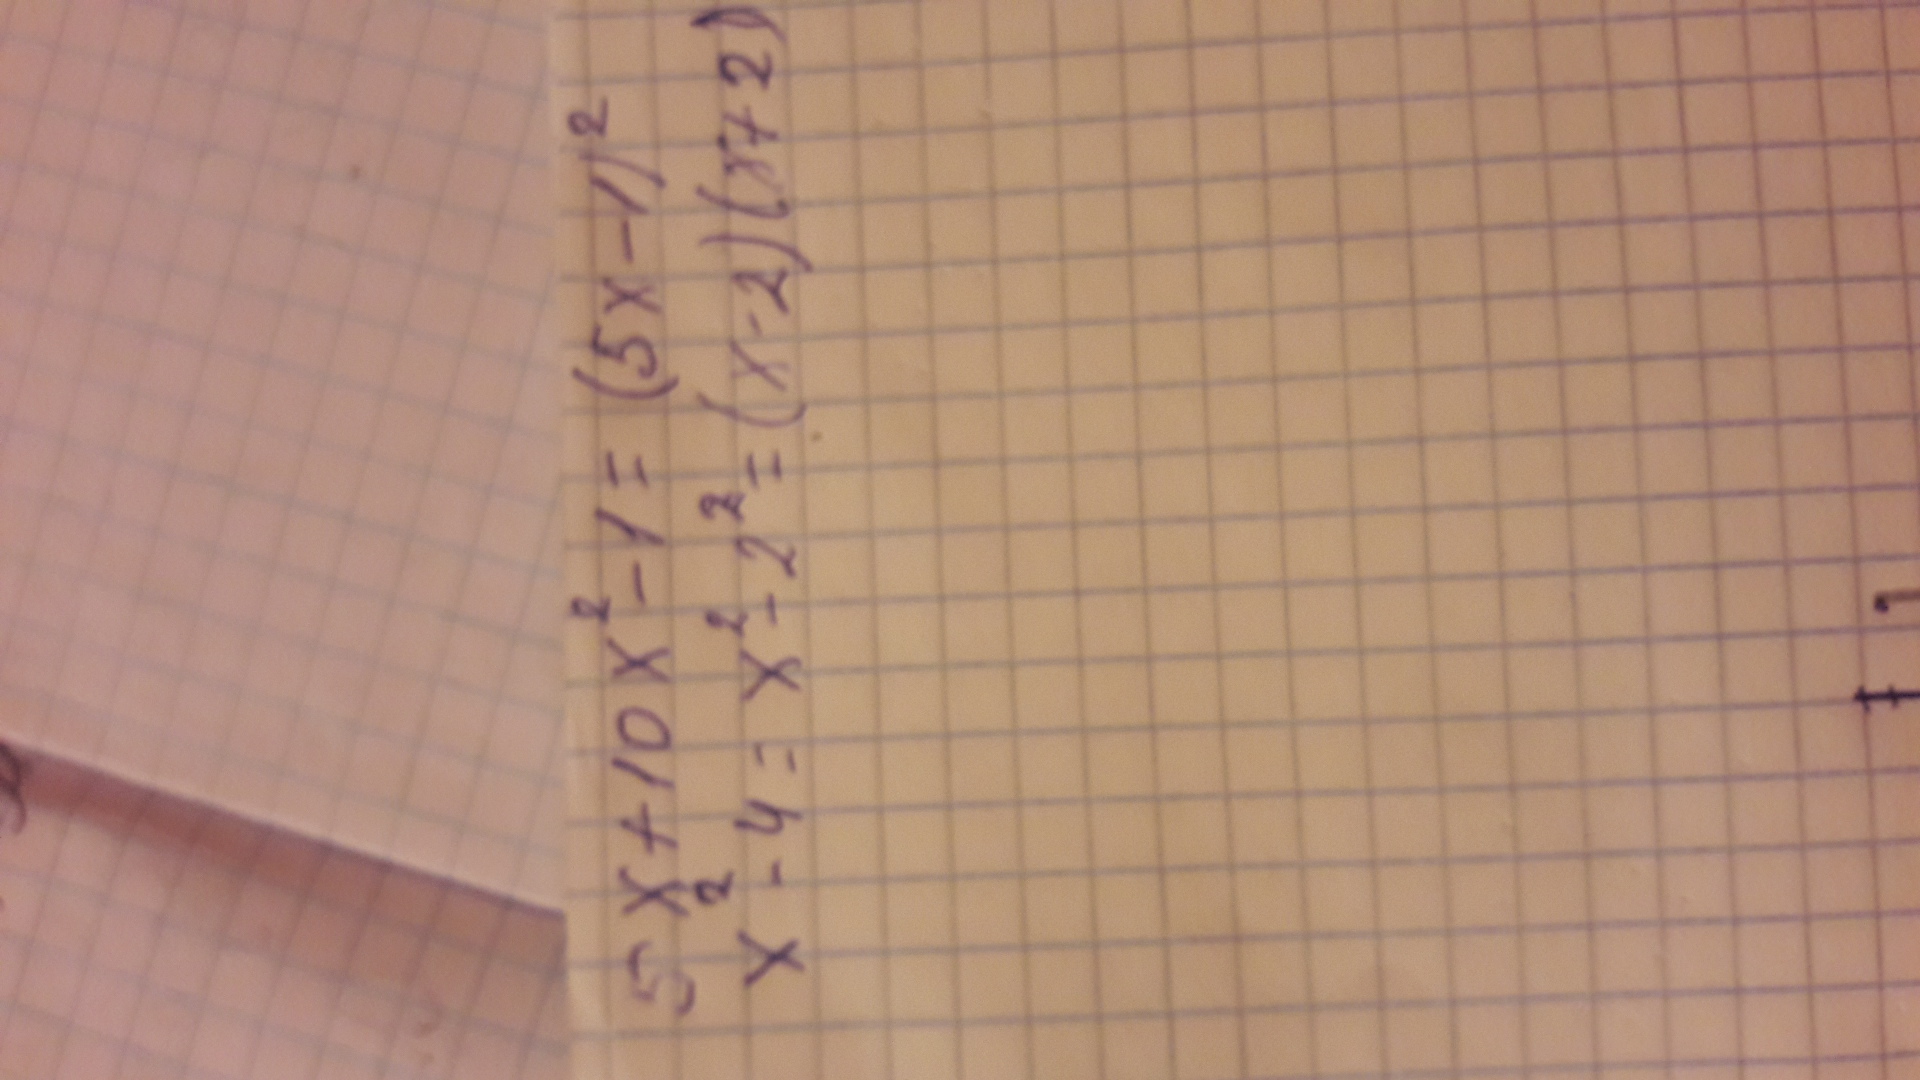 Х В квадрате умножить на х. 5-Х умножить 5+х. Х умножить на не х. 19 Умножить на Икс равно 95. 5 27 умножить на 10